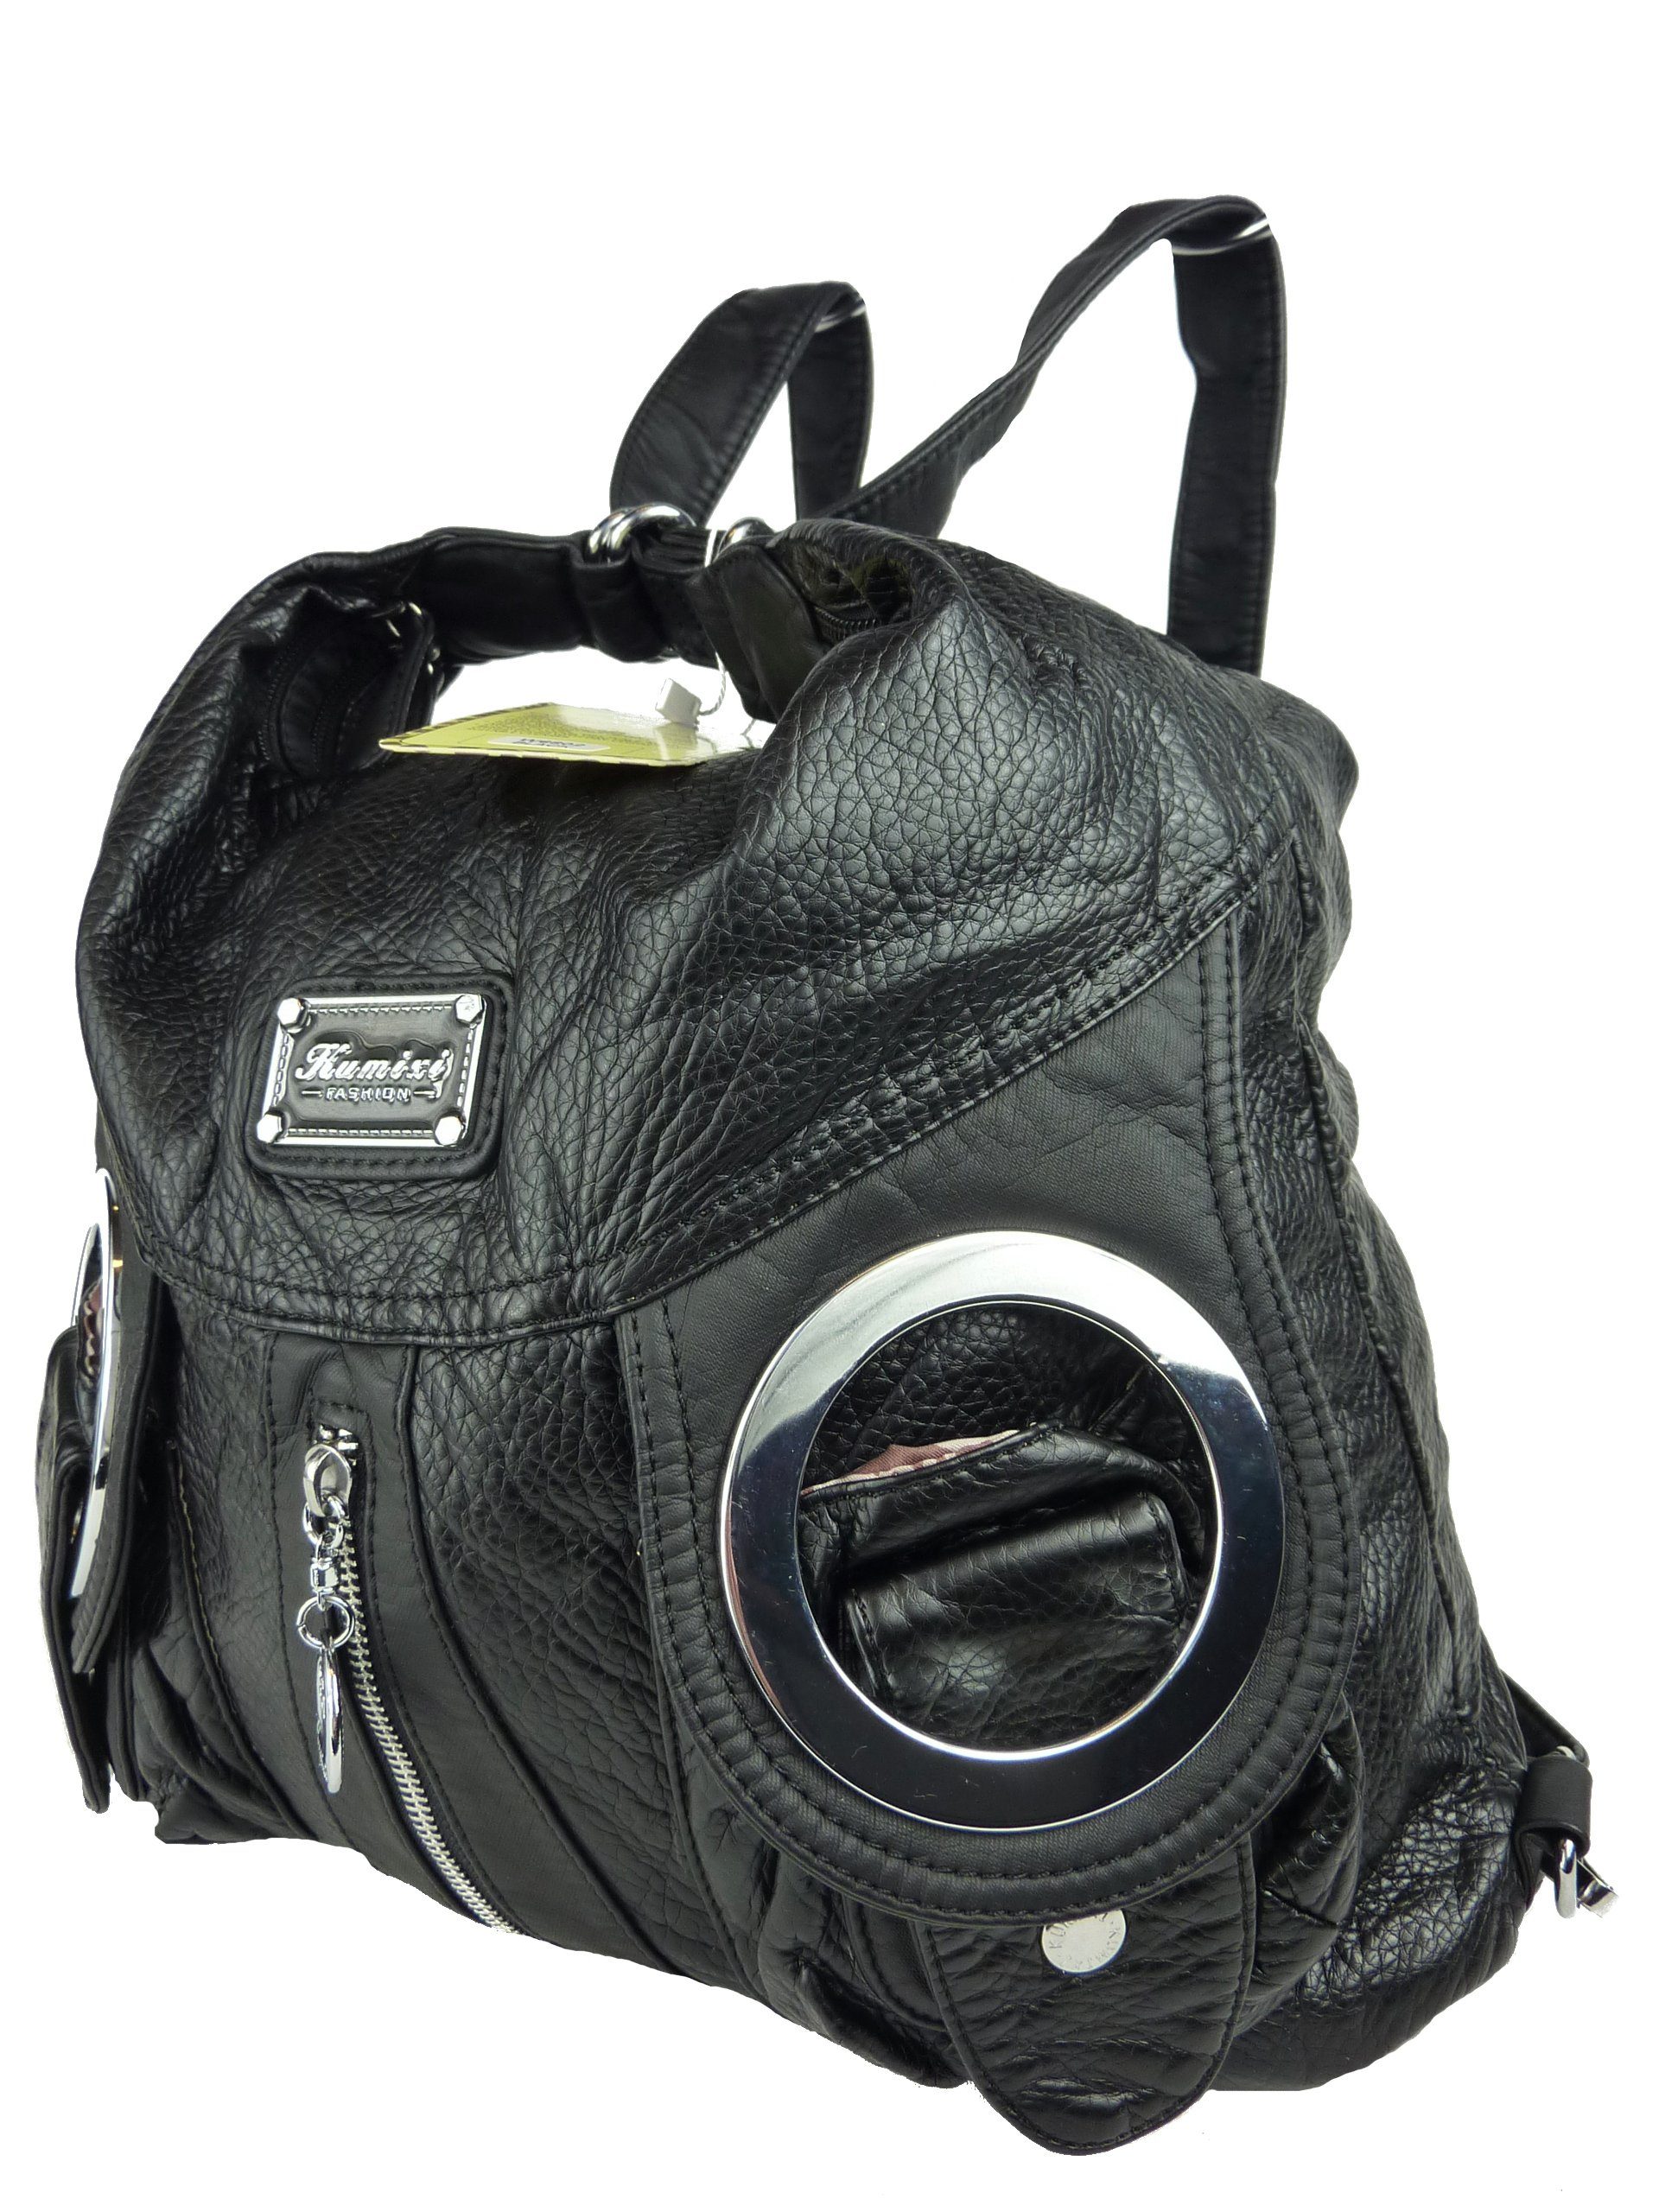 oder Schultertasche als W6802 schwarz Schulterriemen, Rucksack, verstellbarer Tasche tragbar Rucksack Taschen4life Rucksacktasche Multifunktionstasche, oder Schultertasche